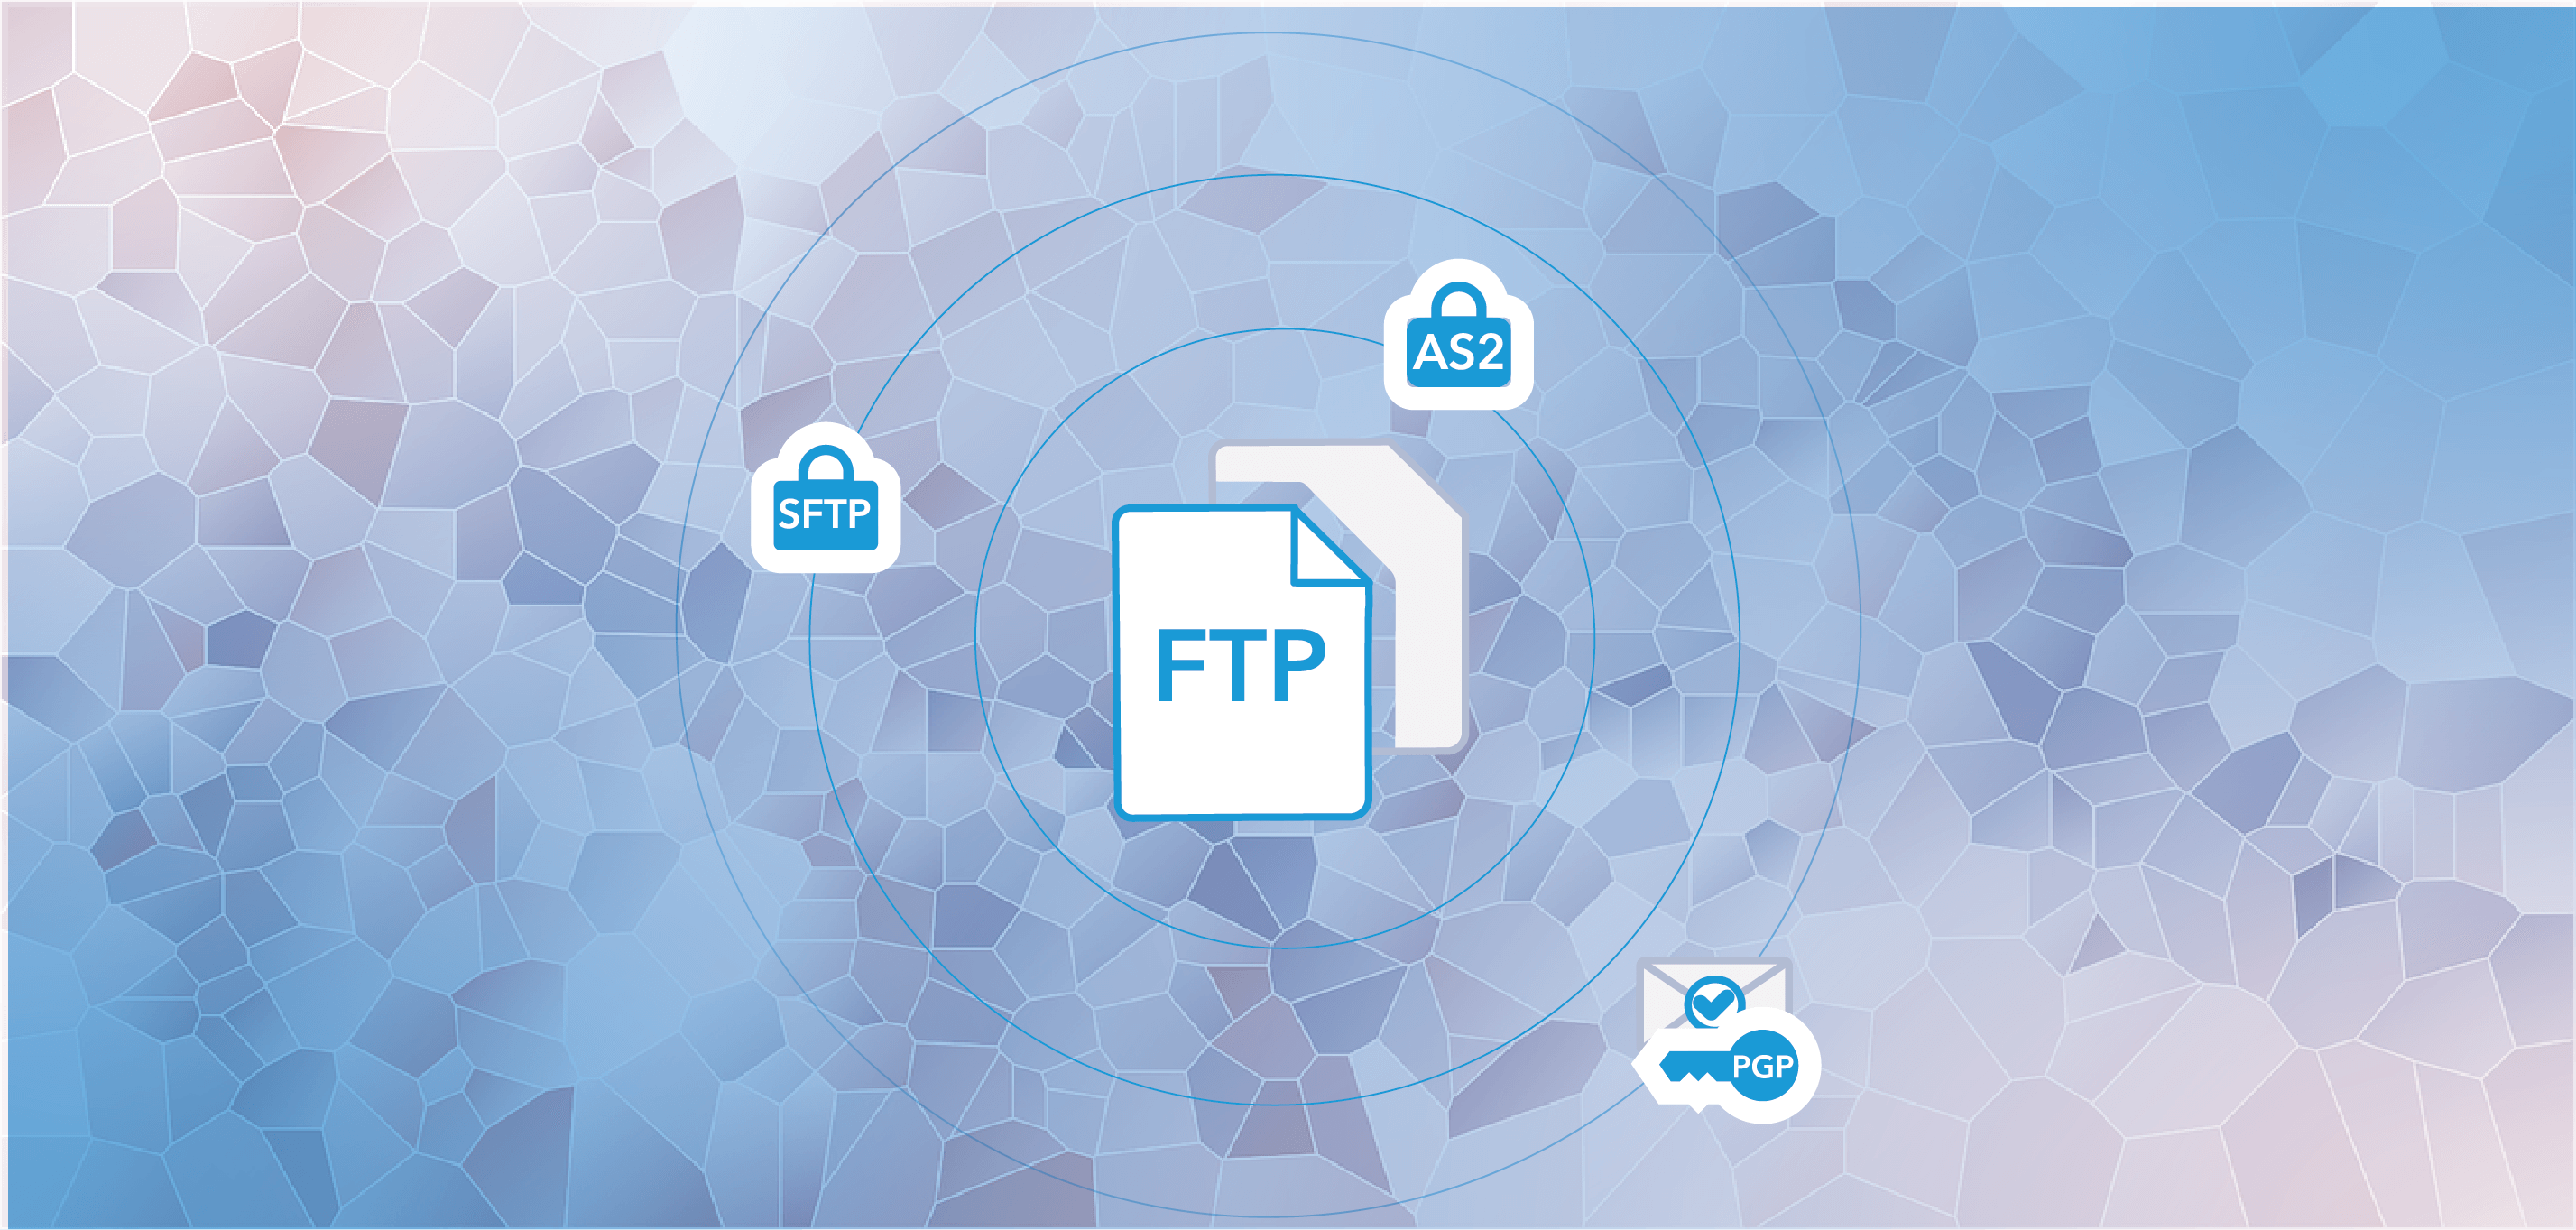 FTP alternatives